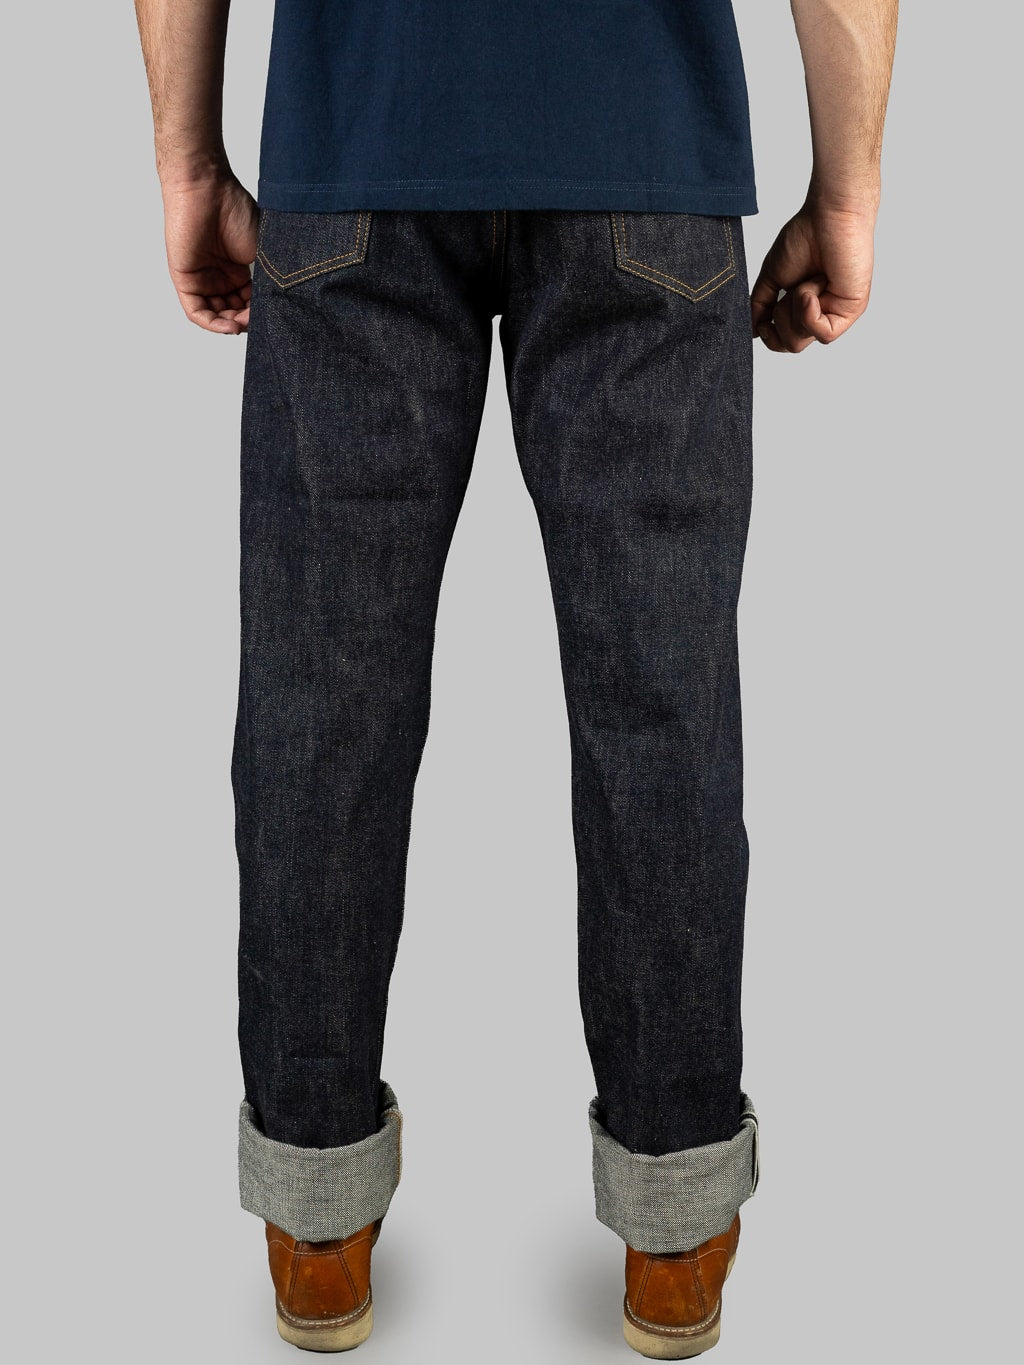 tcb 50s regular straight indigo selvedge japanese jeans  back fit